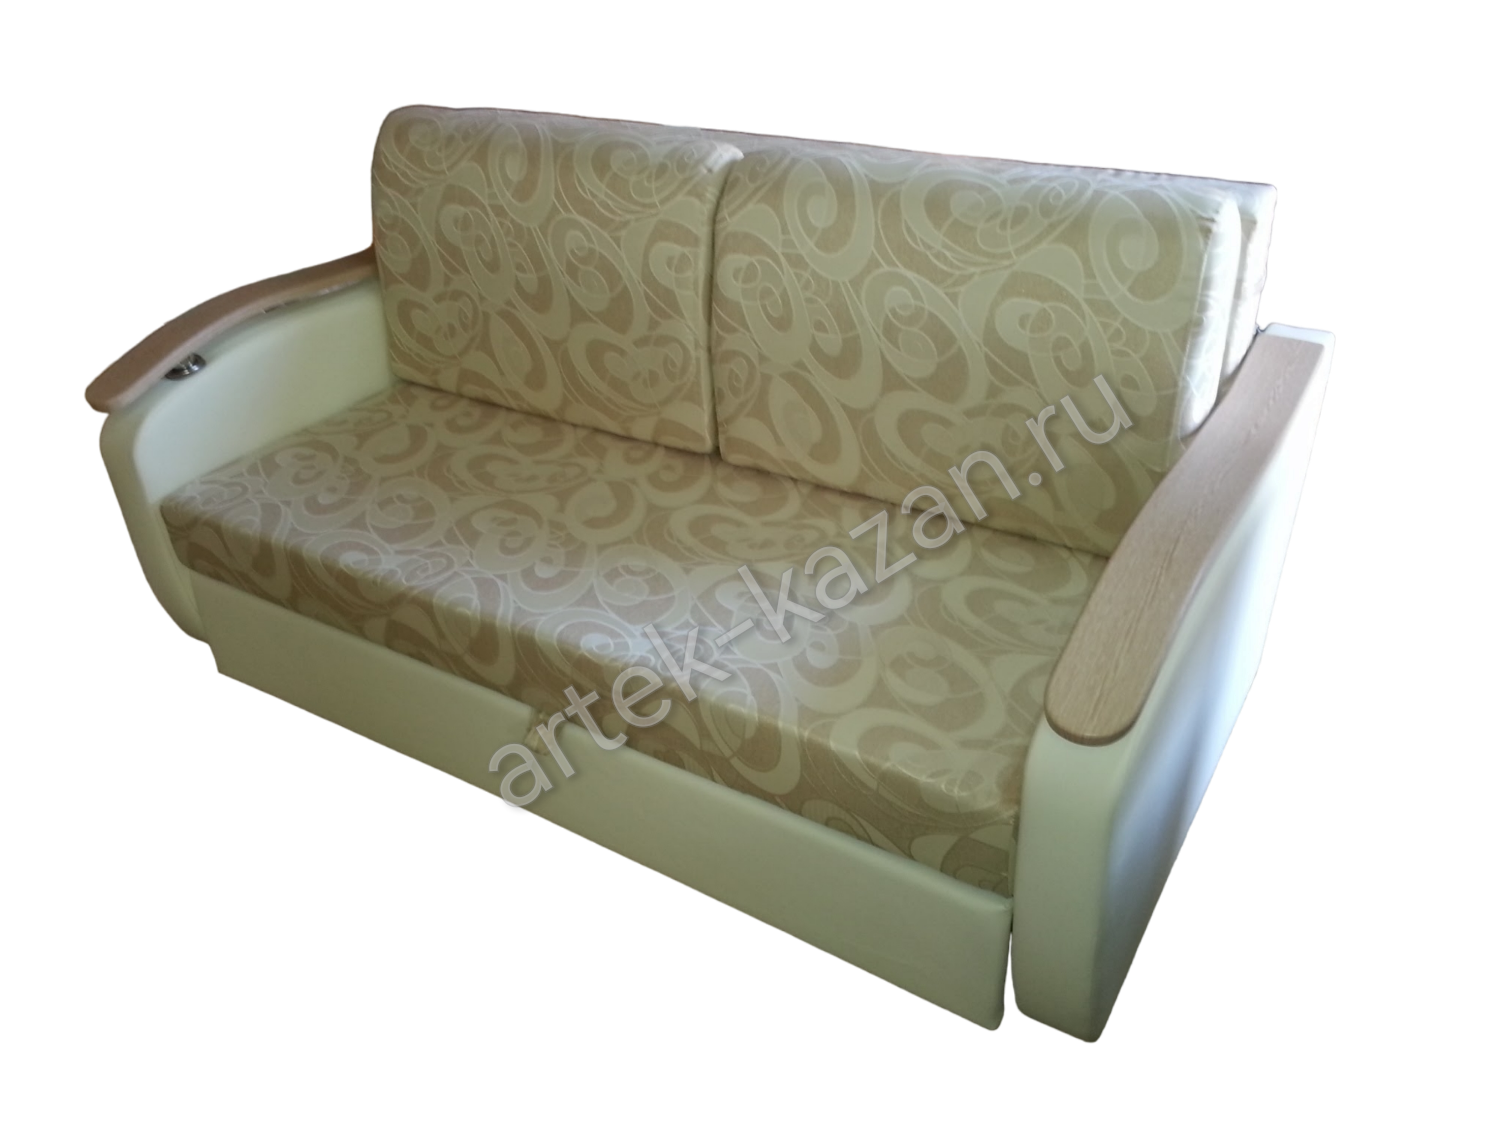 Мини диван на выкатном механизме Миник фото № 3. Купить недорогой диван по низкой цене от производителя можно у нас.